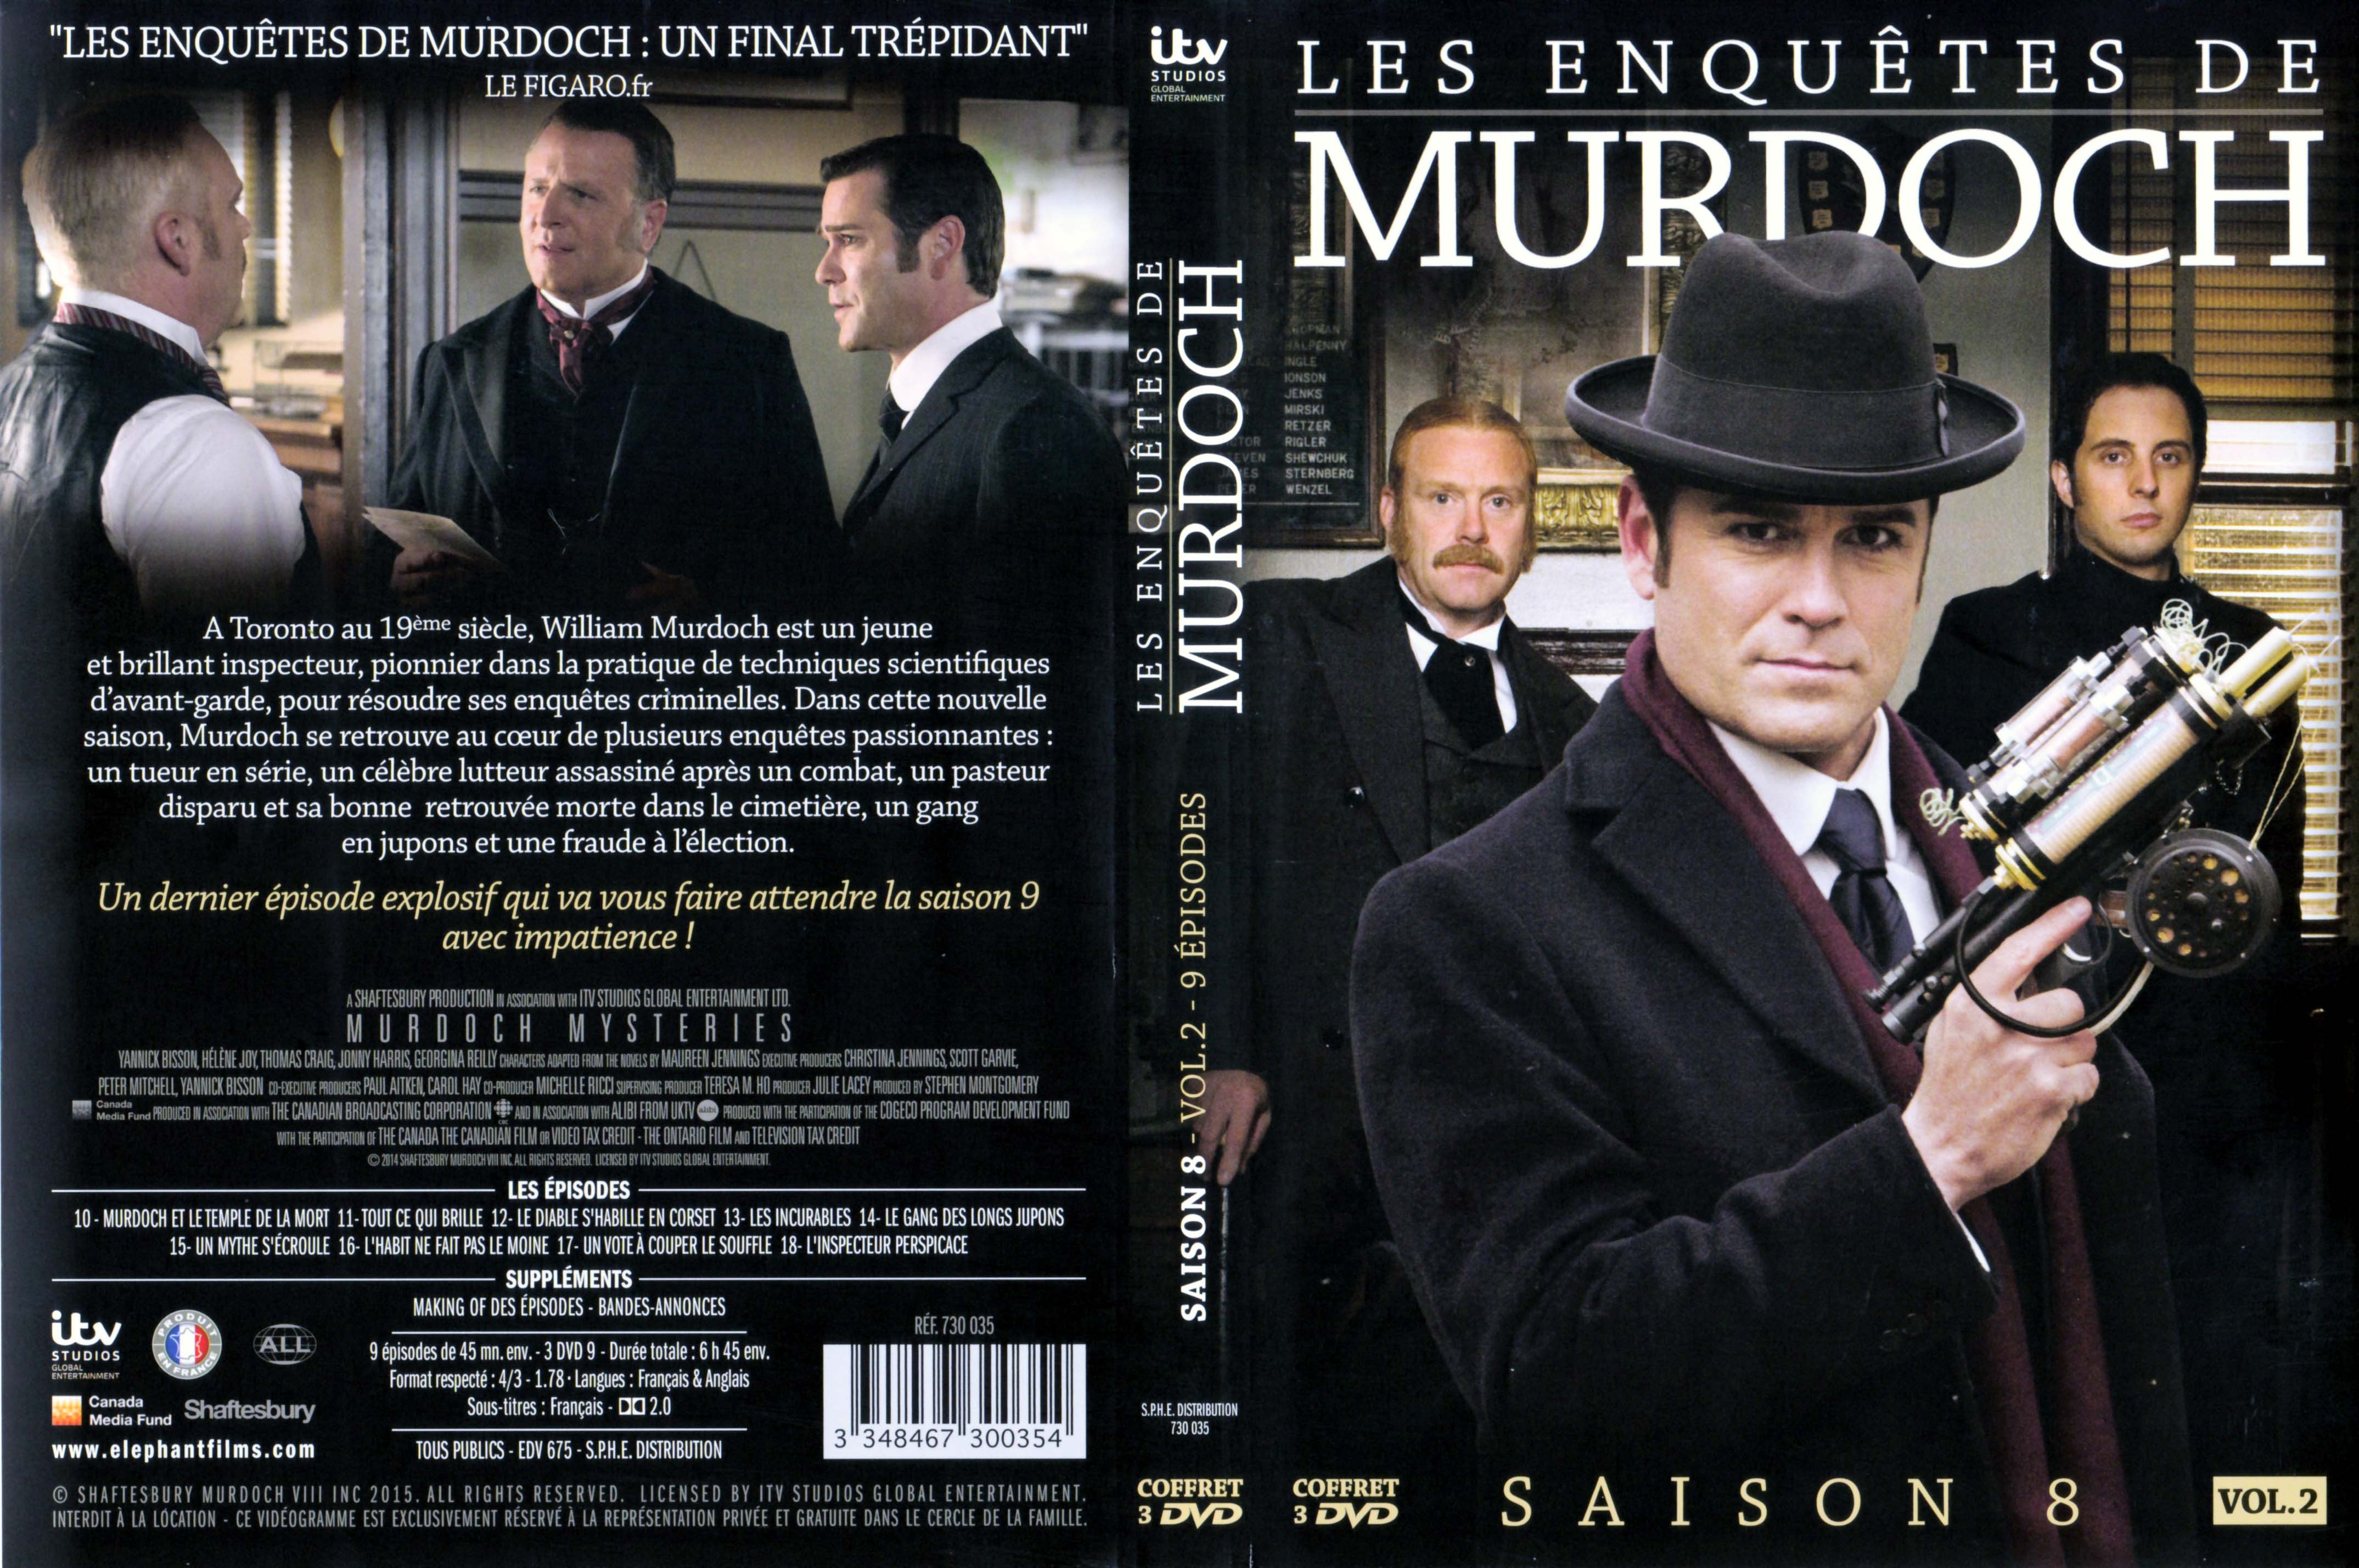 Jaquette DVD Les enqutes de Murdoch Saison 8 Vol 2